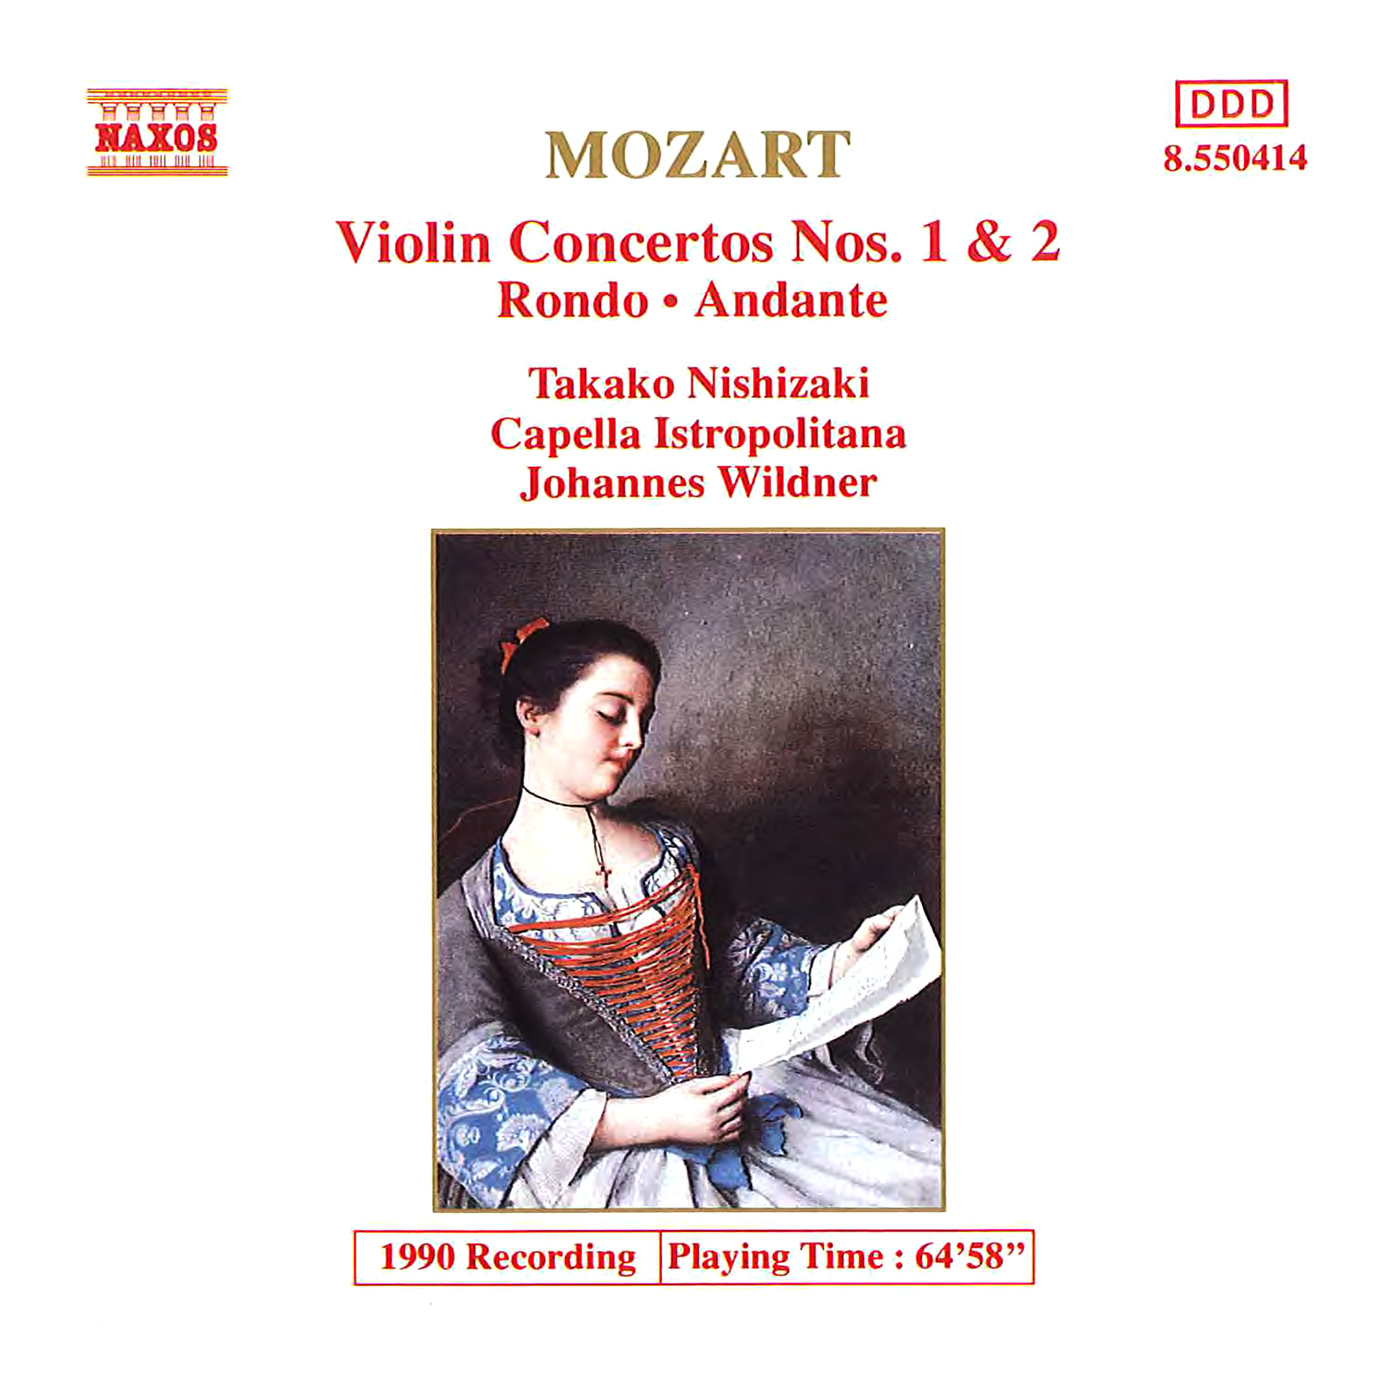 Violin Concerto No. 2 in D Major, K. 211: III. Rondeau